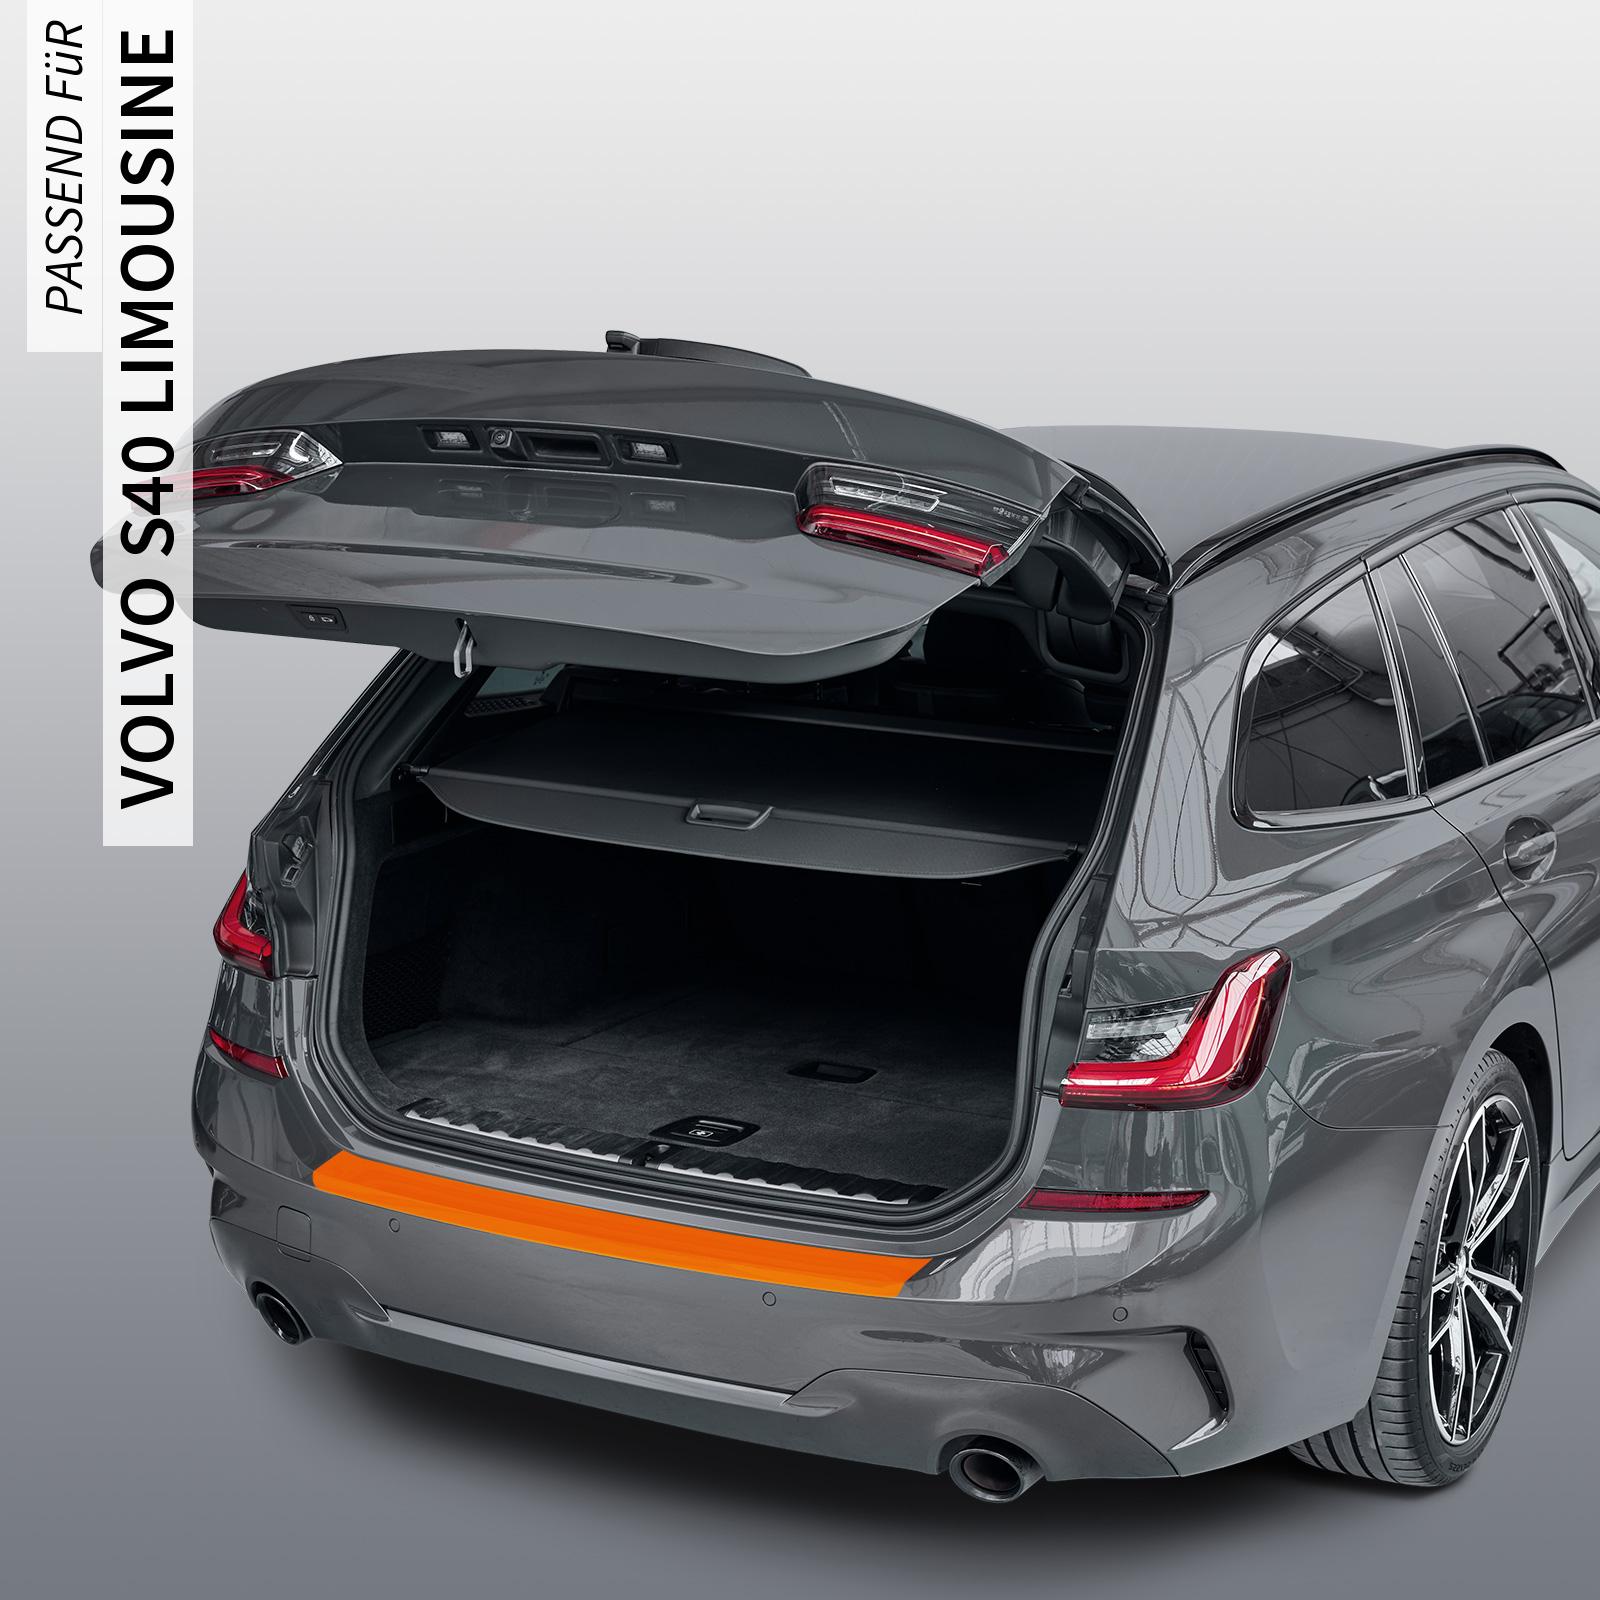 Ladekantenschutzfolie - Transparent Glatt MATT 110 µm stark  für Volvo S40 Limousine (II) ab BJ 2012